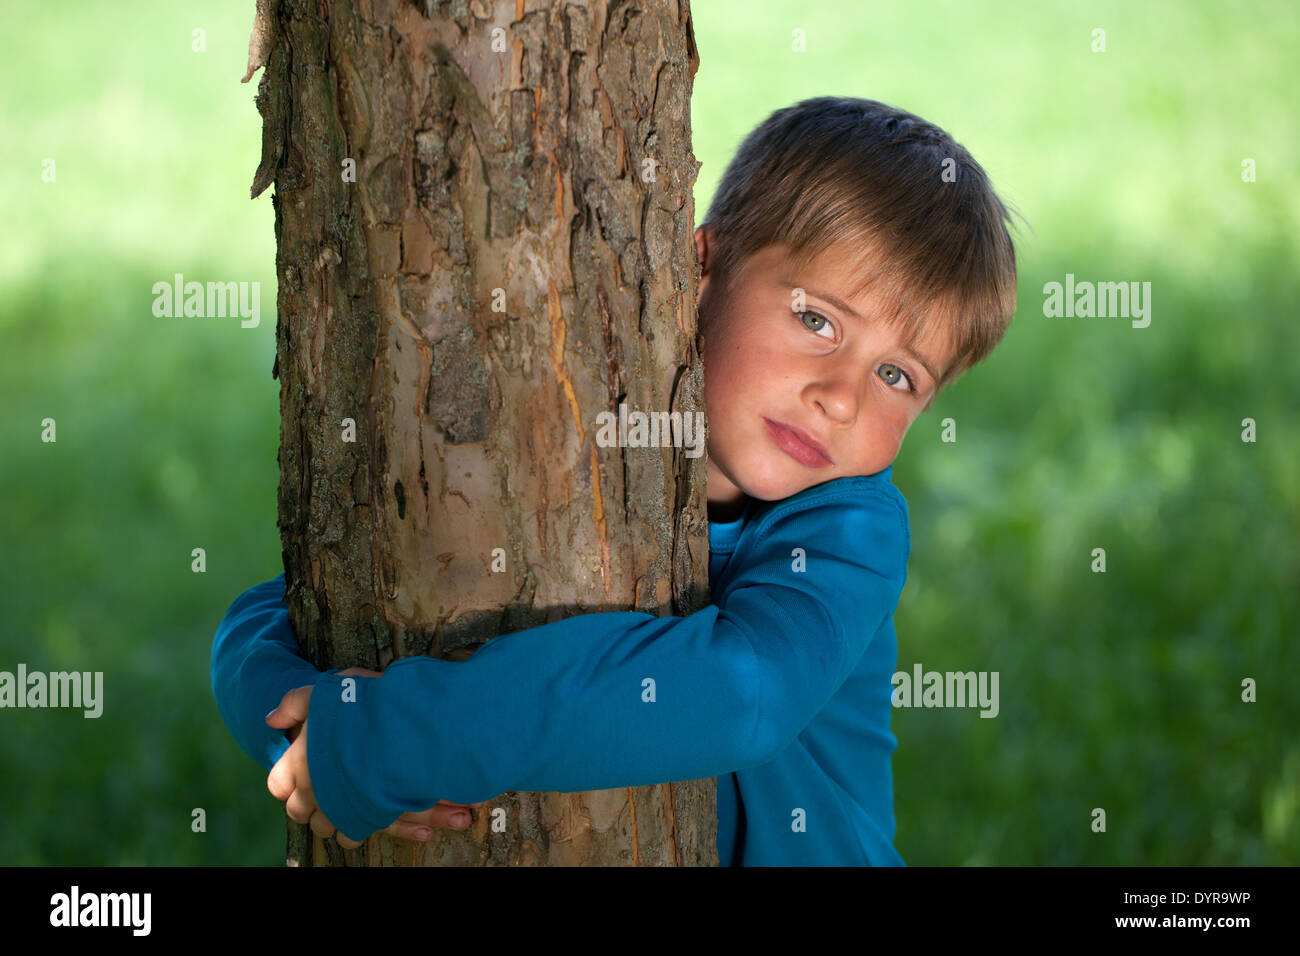 Symbolisches Bild: kleiner Junge einen Baum umarmen Stockfoto